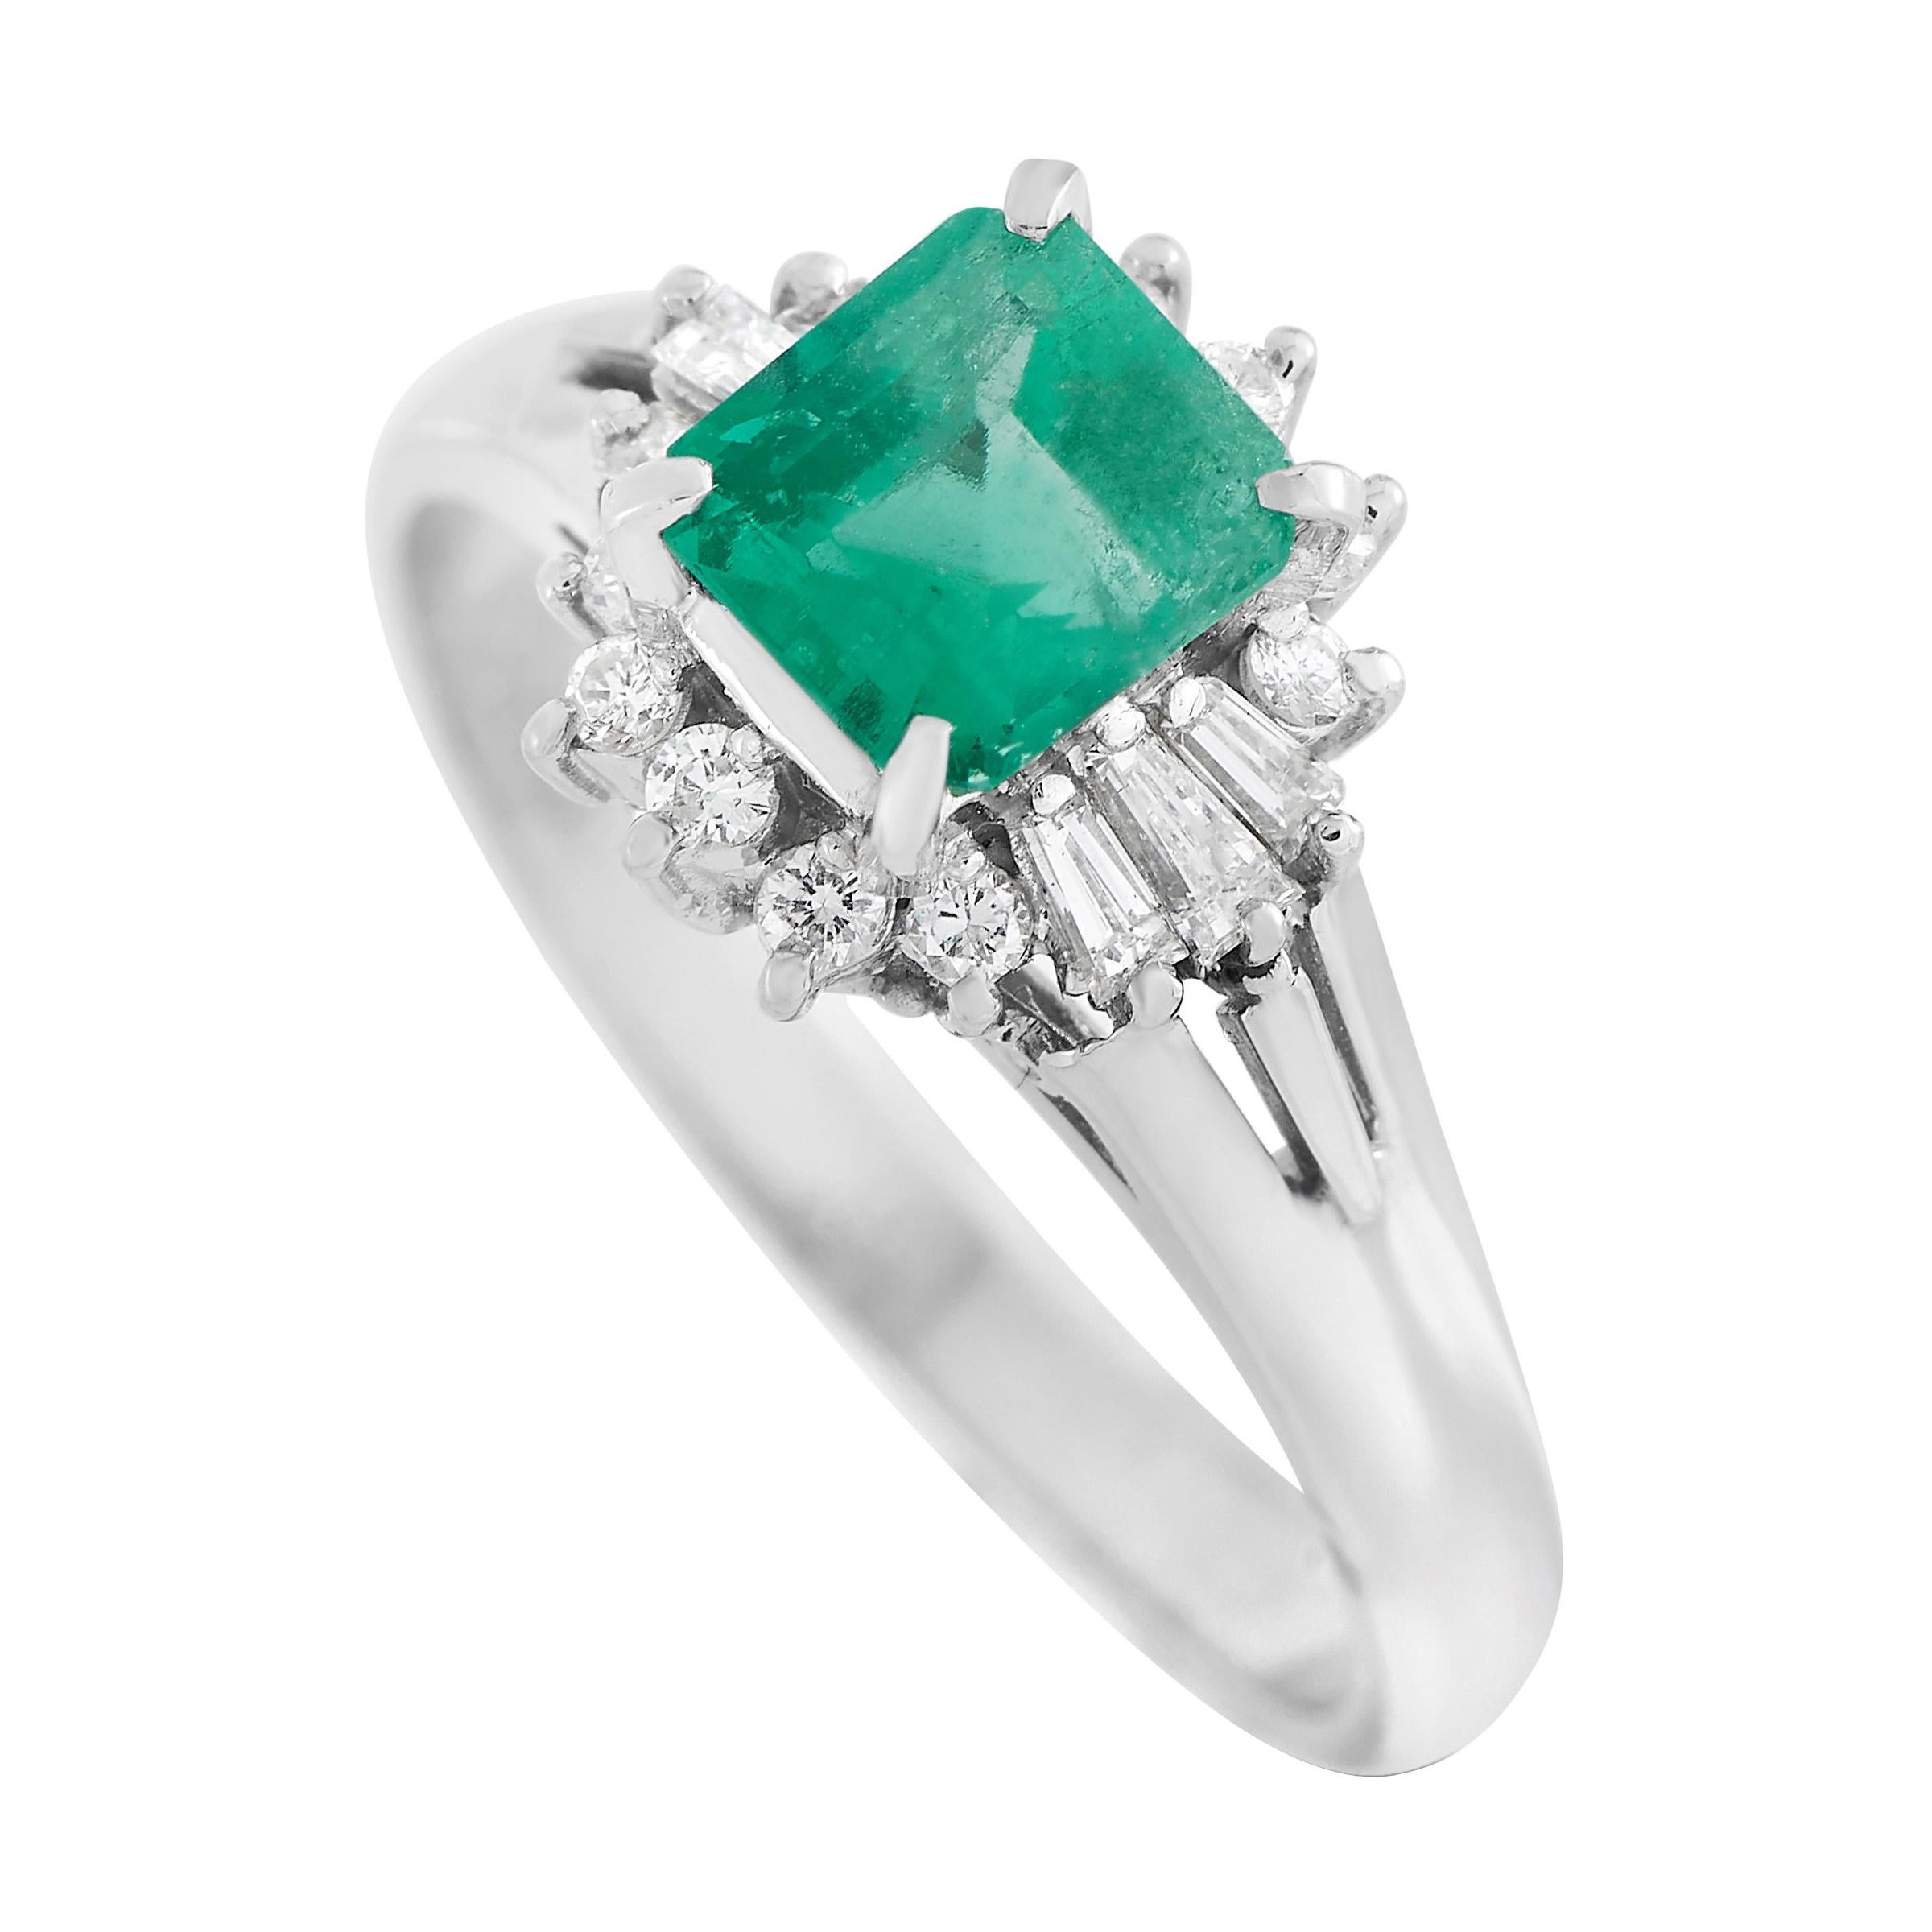 LB Exclusive Platinum 0.22 Ct Diamond and Emerald Ring